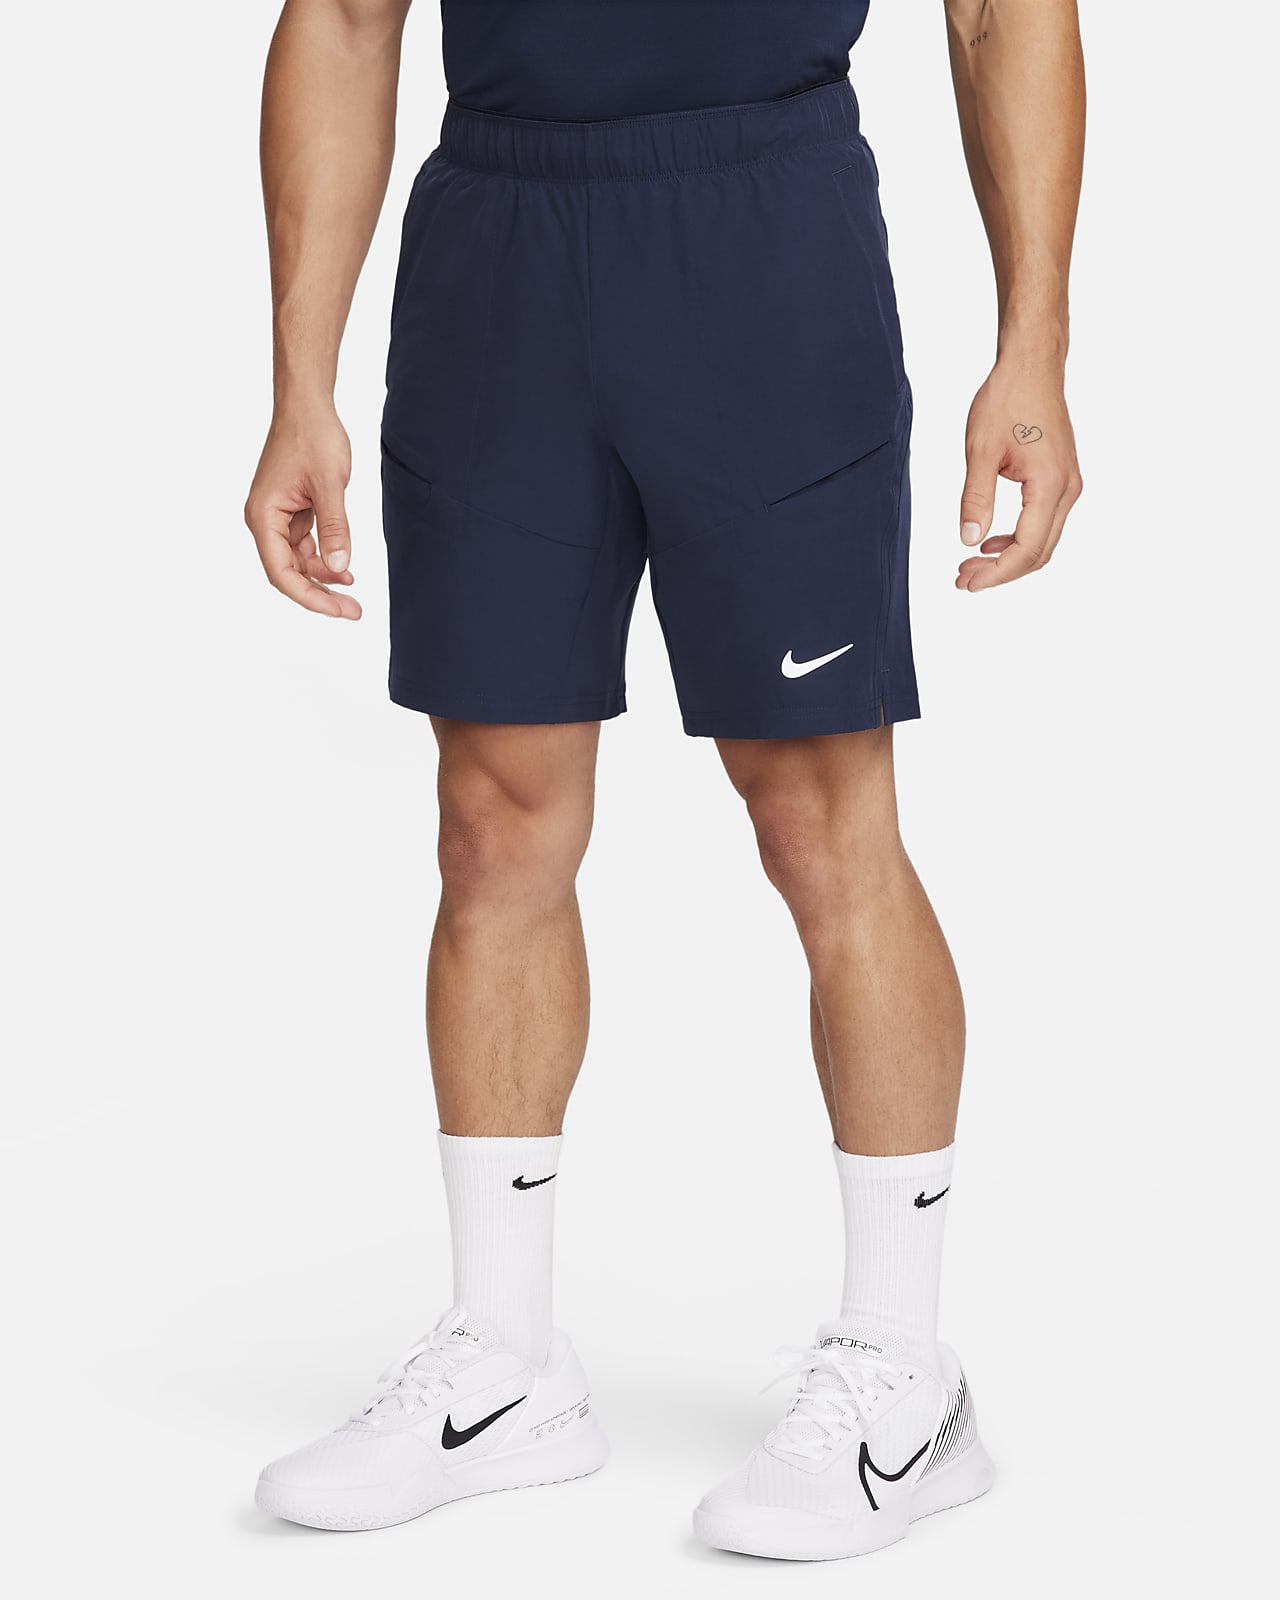 NikeCourt Advantage Pantalons curts de tennis de 23 cm - Home